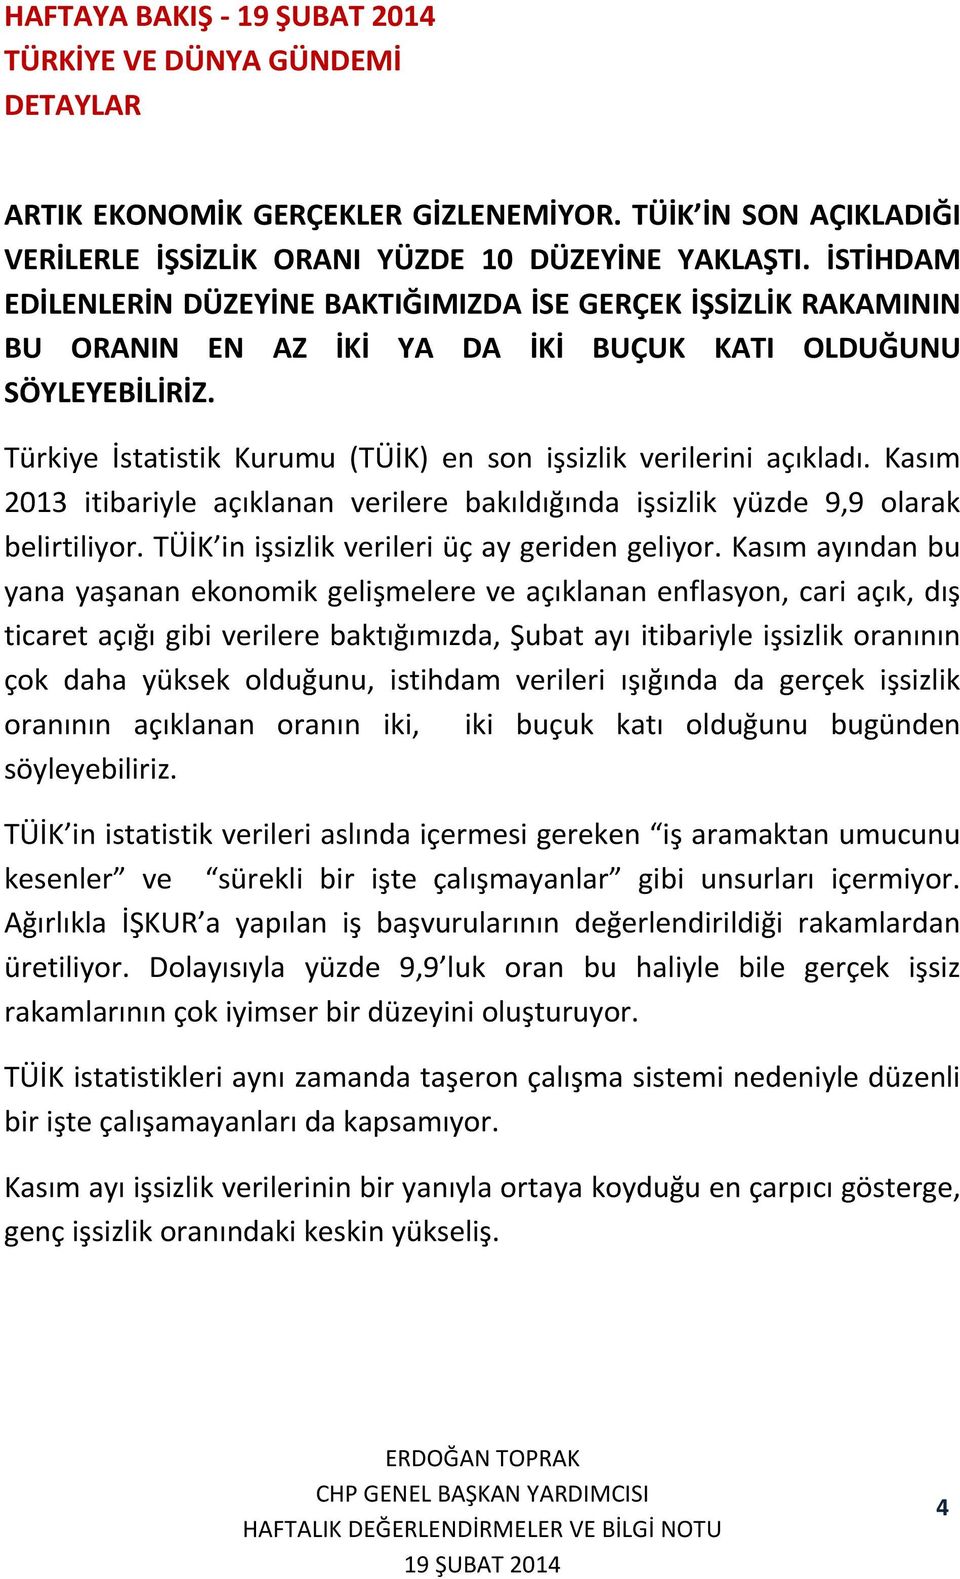 Türkiye İstatistik Kurumu (TÜİK) en son işsizlik verilerini açıkladı. Kasım 2013 itibariyle açıklanan verilere bakıldığında işsizlik yüzde 9,9 olarak belirtiliyor.